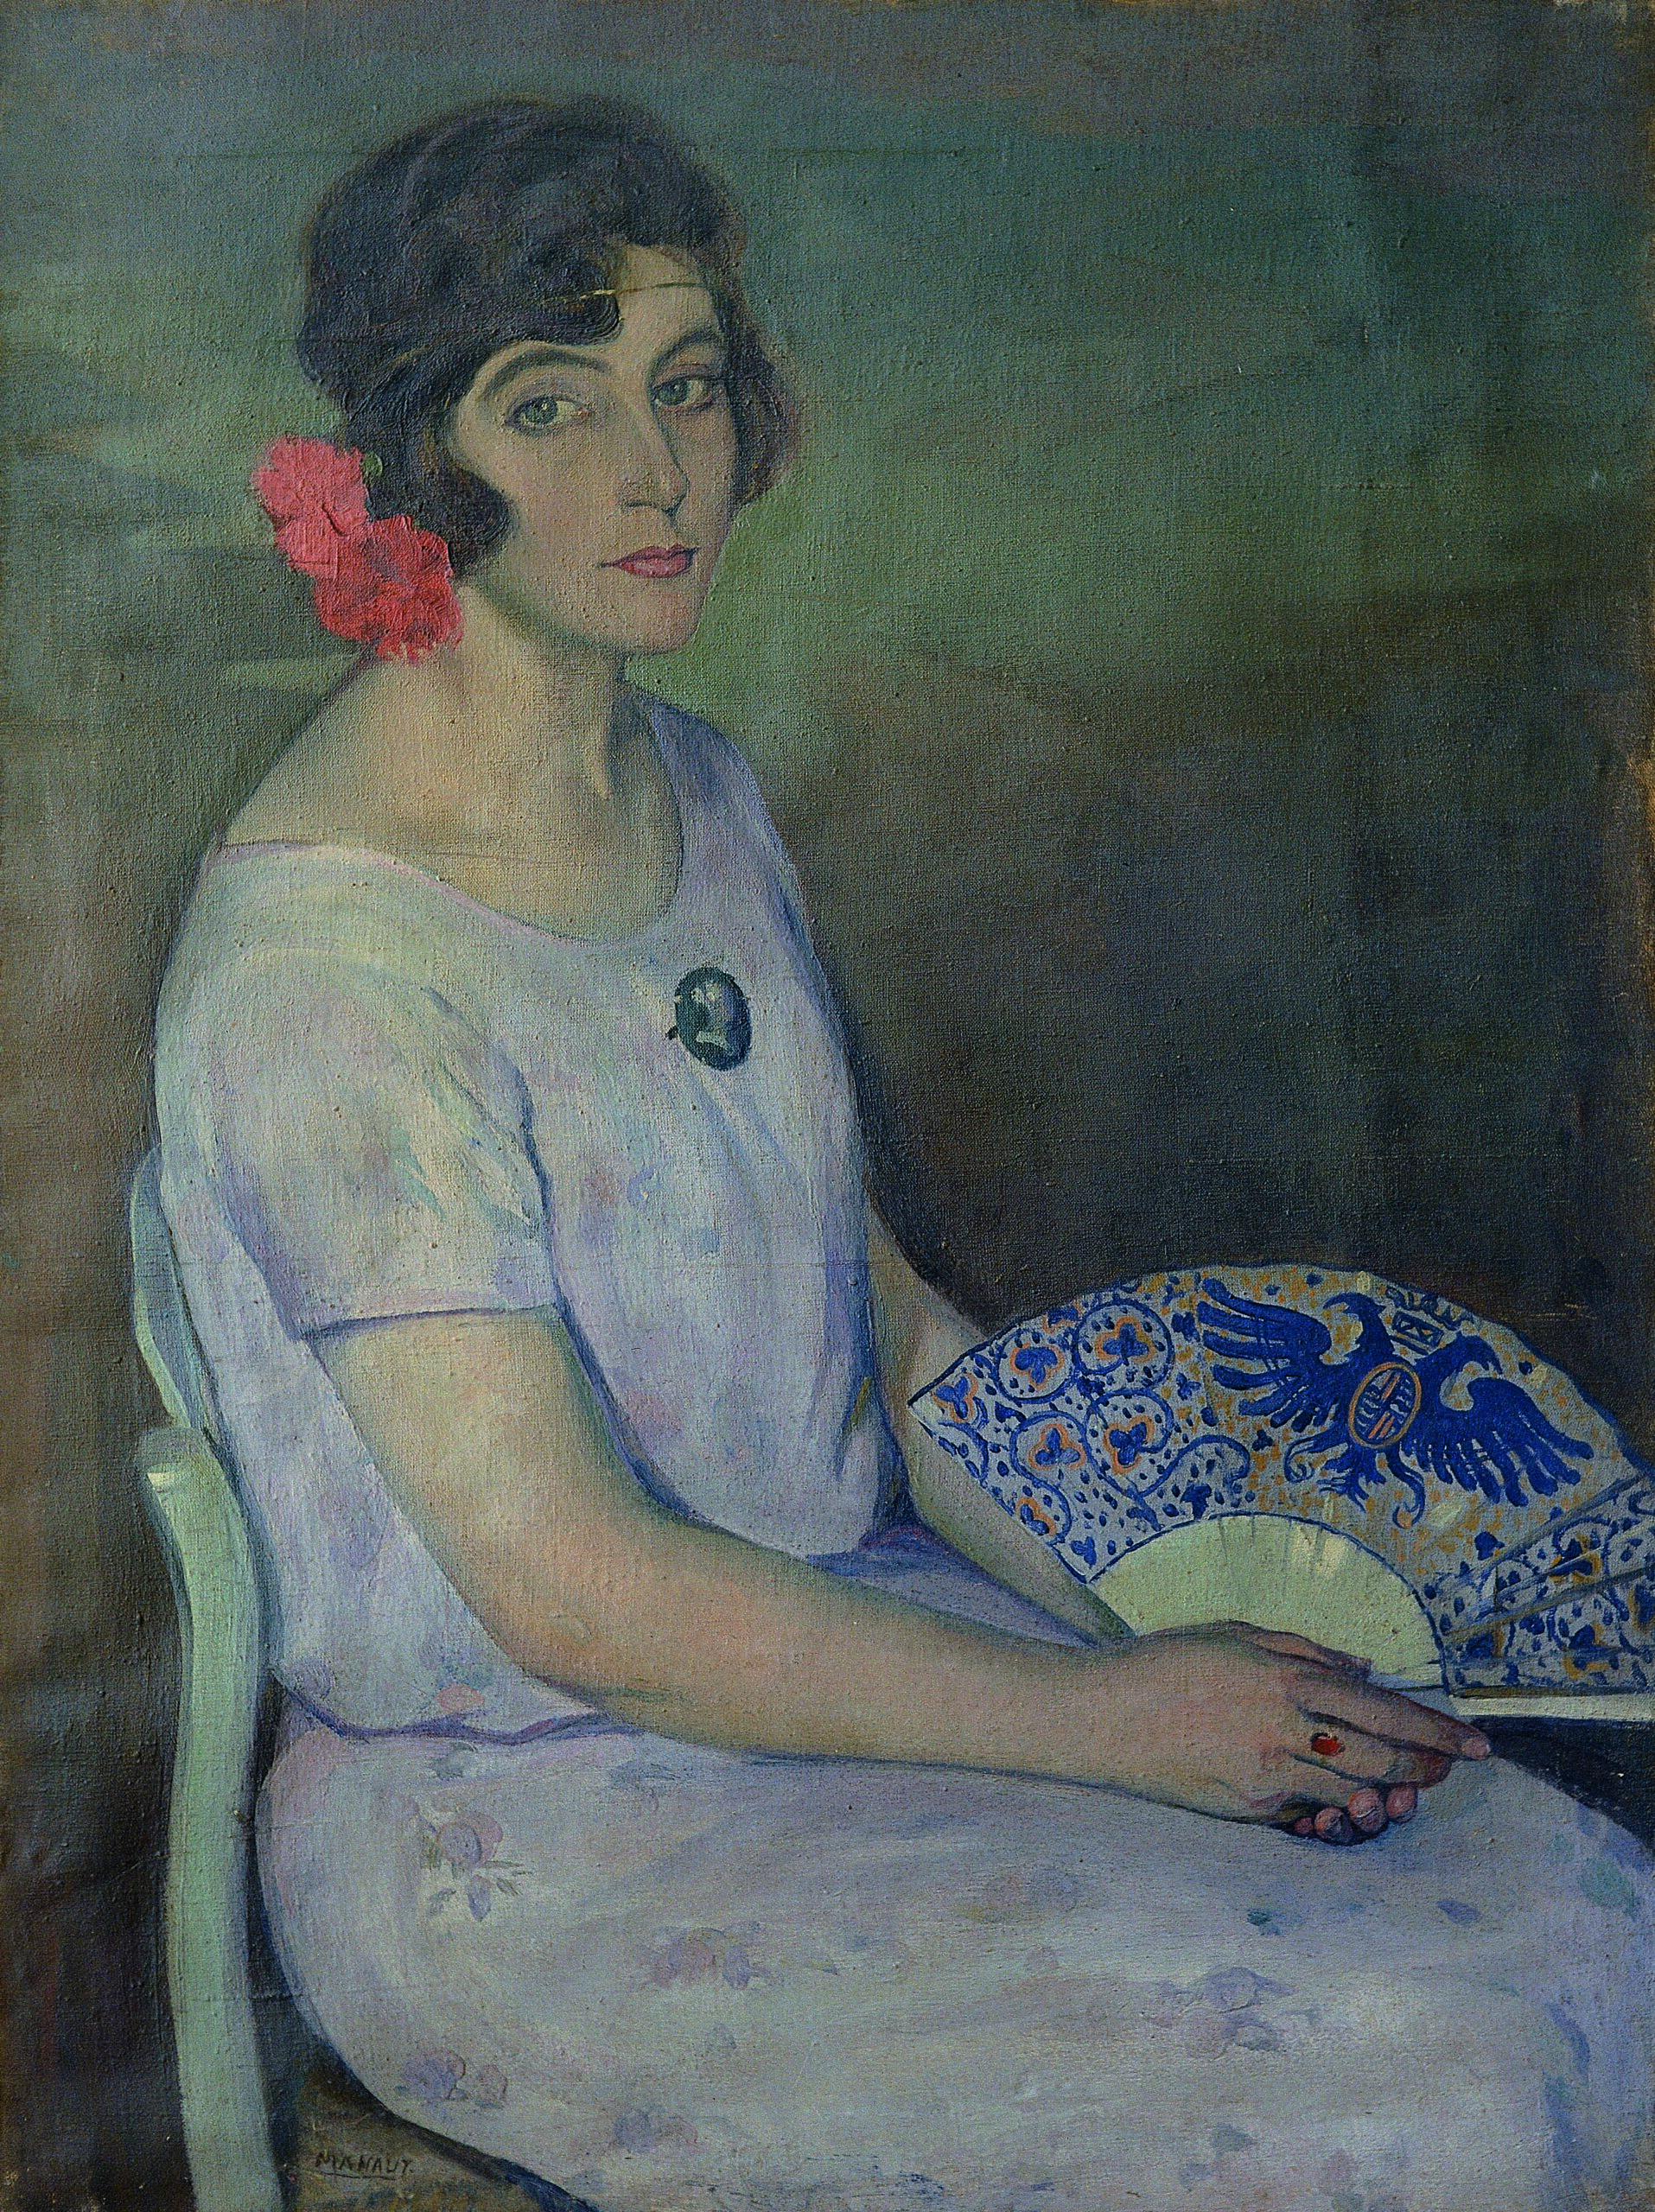 Pintura de José Manaut titulada Retrato de Ángeles Roca con abanico, París, 1924. Óleo sobre lienzo.